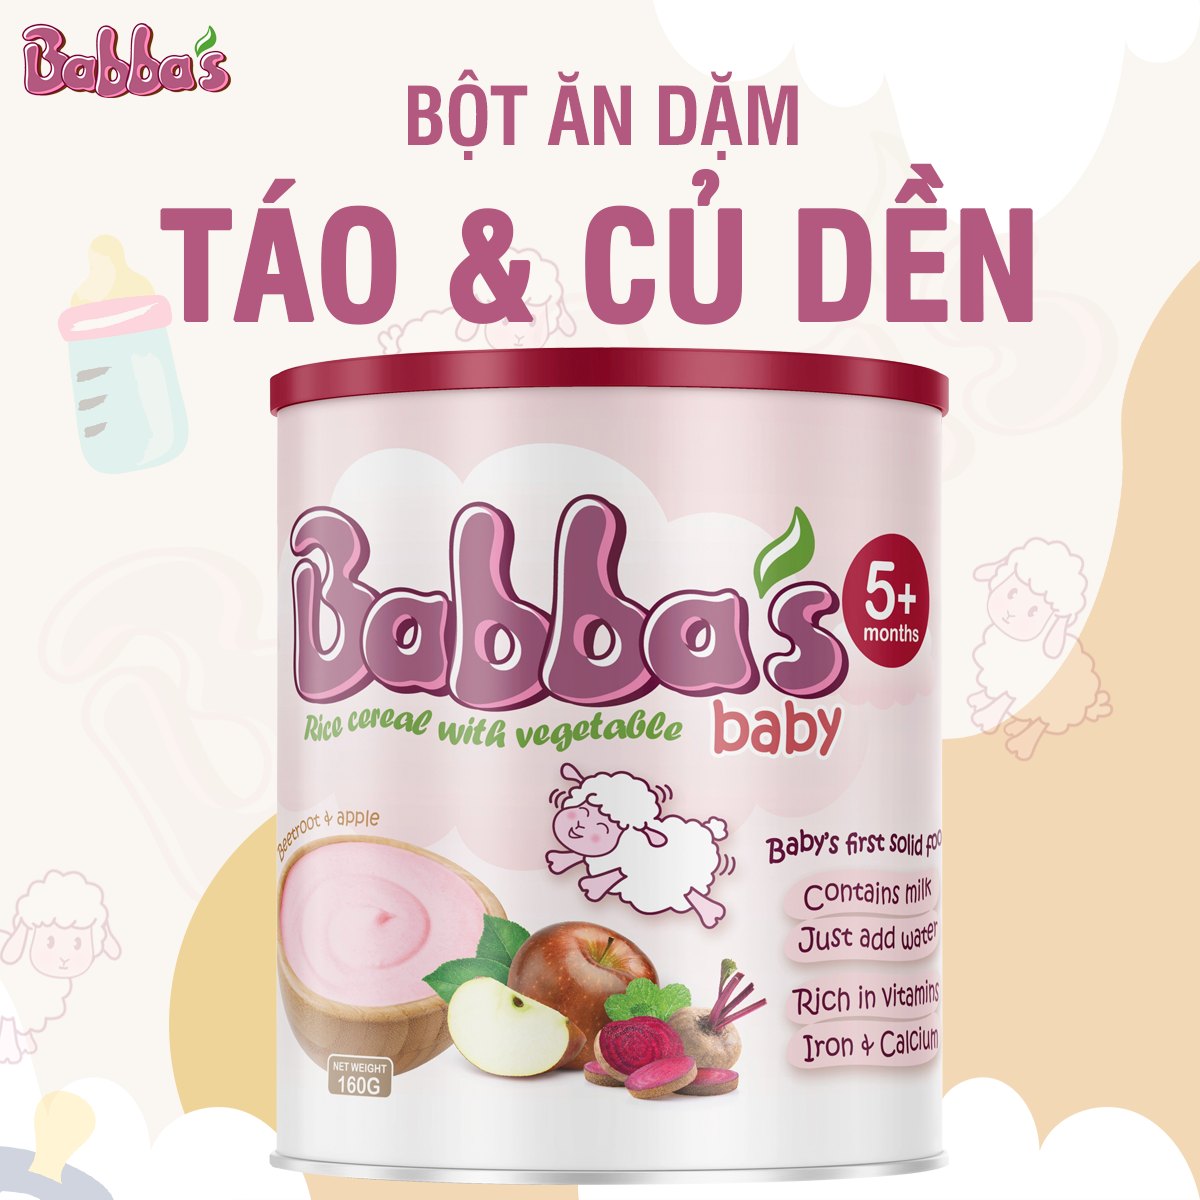 bot-an-dam-babba-baby-11